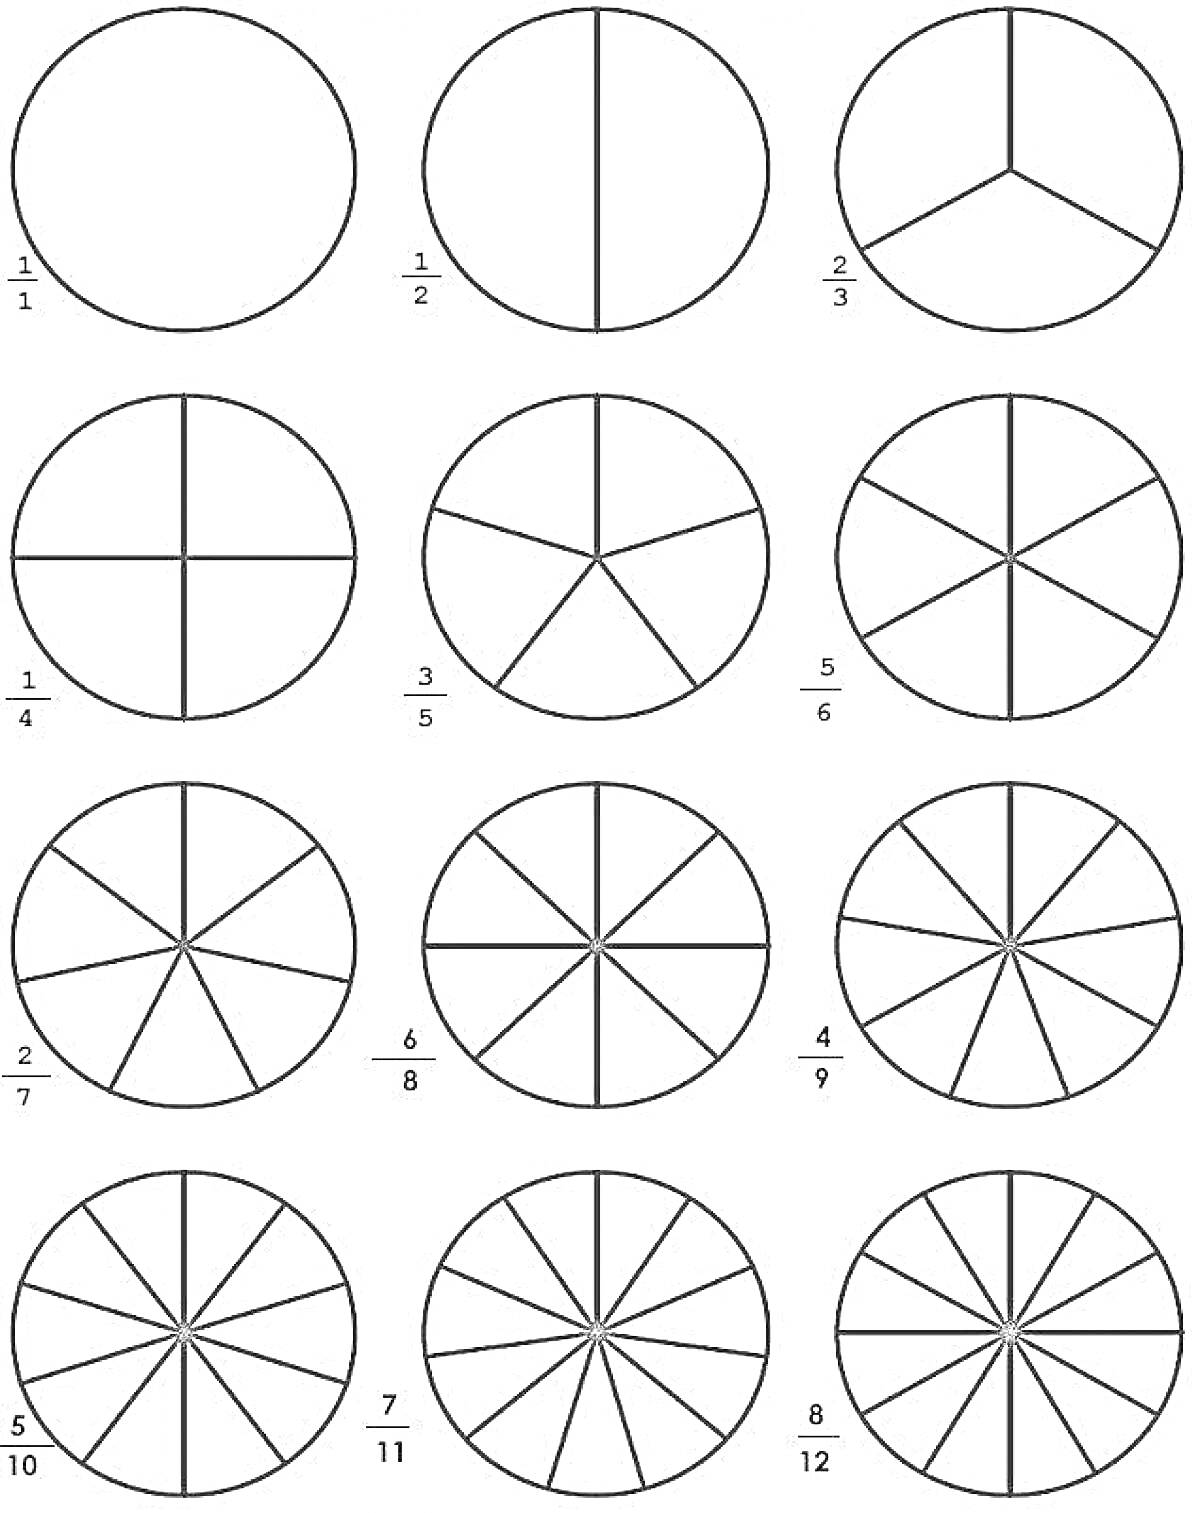 Геометрические круги с делением на секции (12 кругов, деление на 2, 3, 4, 5, 6, 7, 8, 9, 10, 11, и 12 частей)